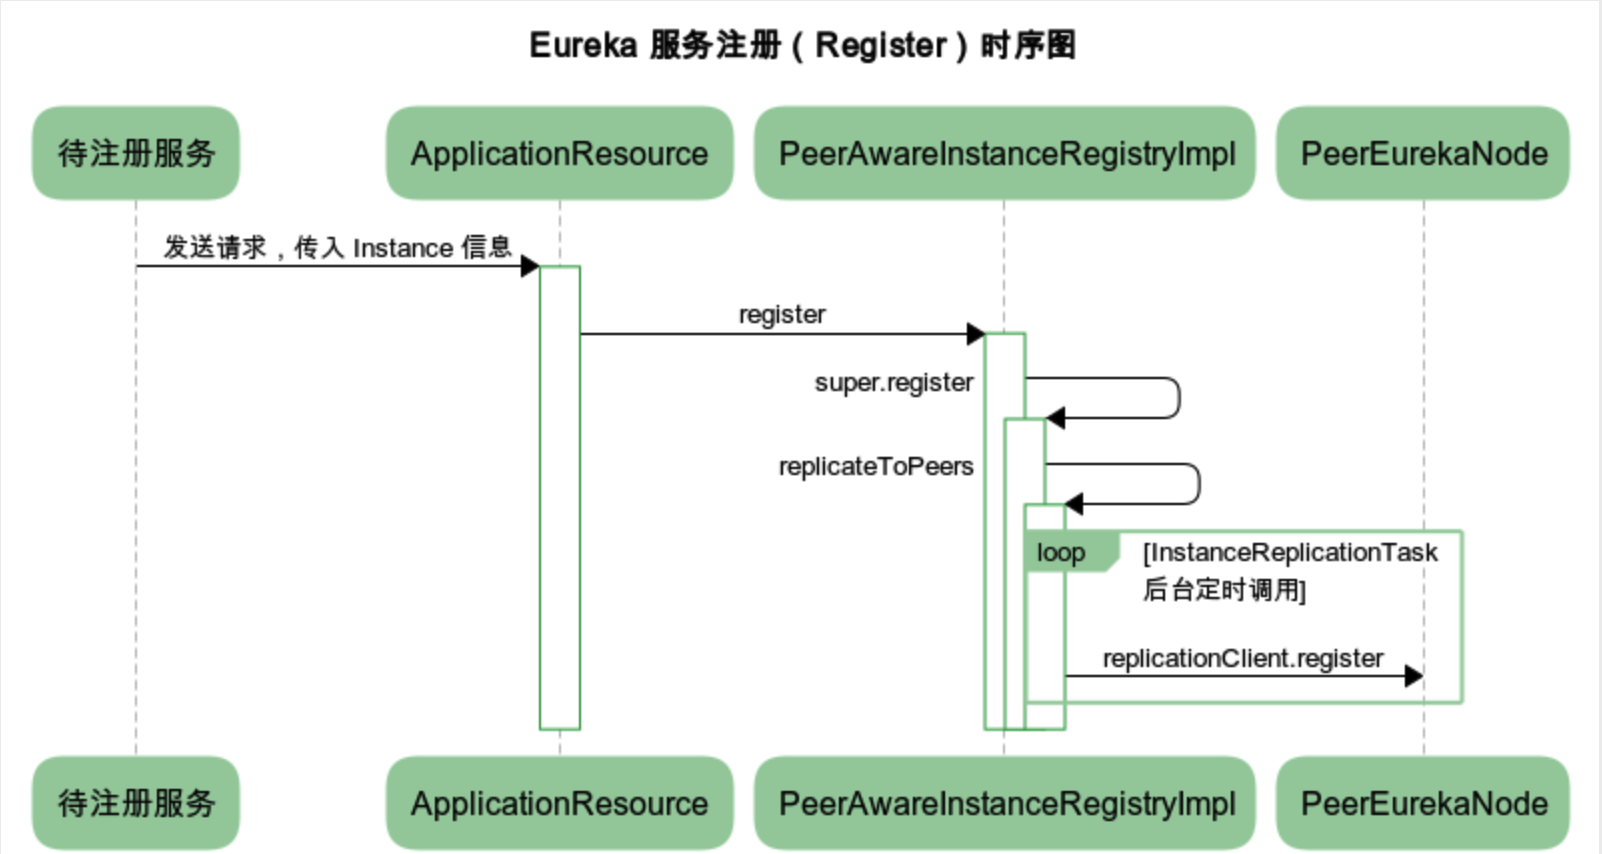 images/eureka-server-register-sequence-chart.png